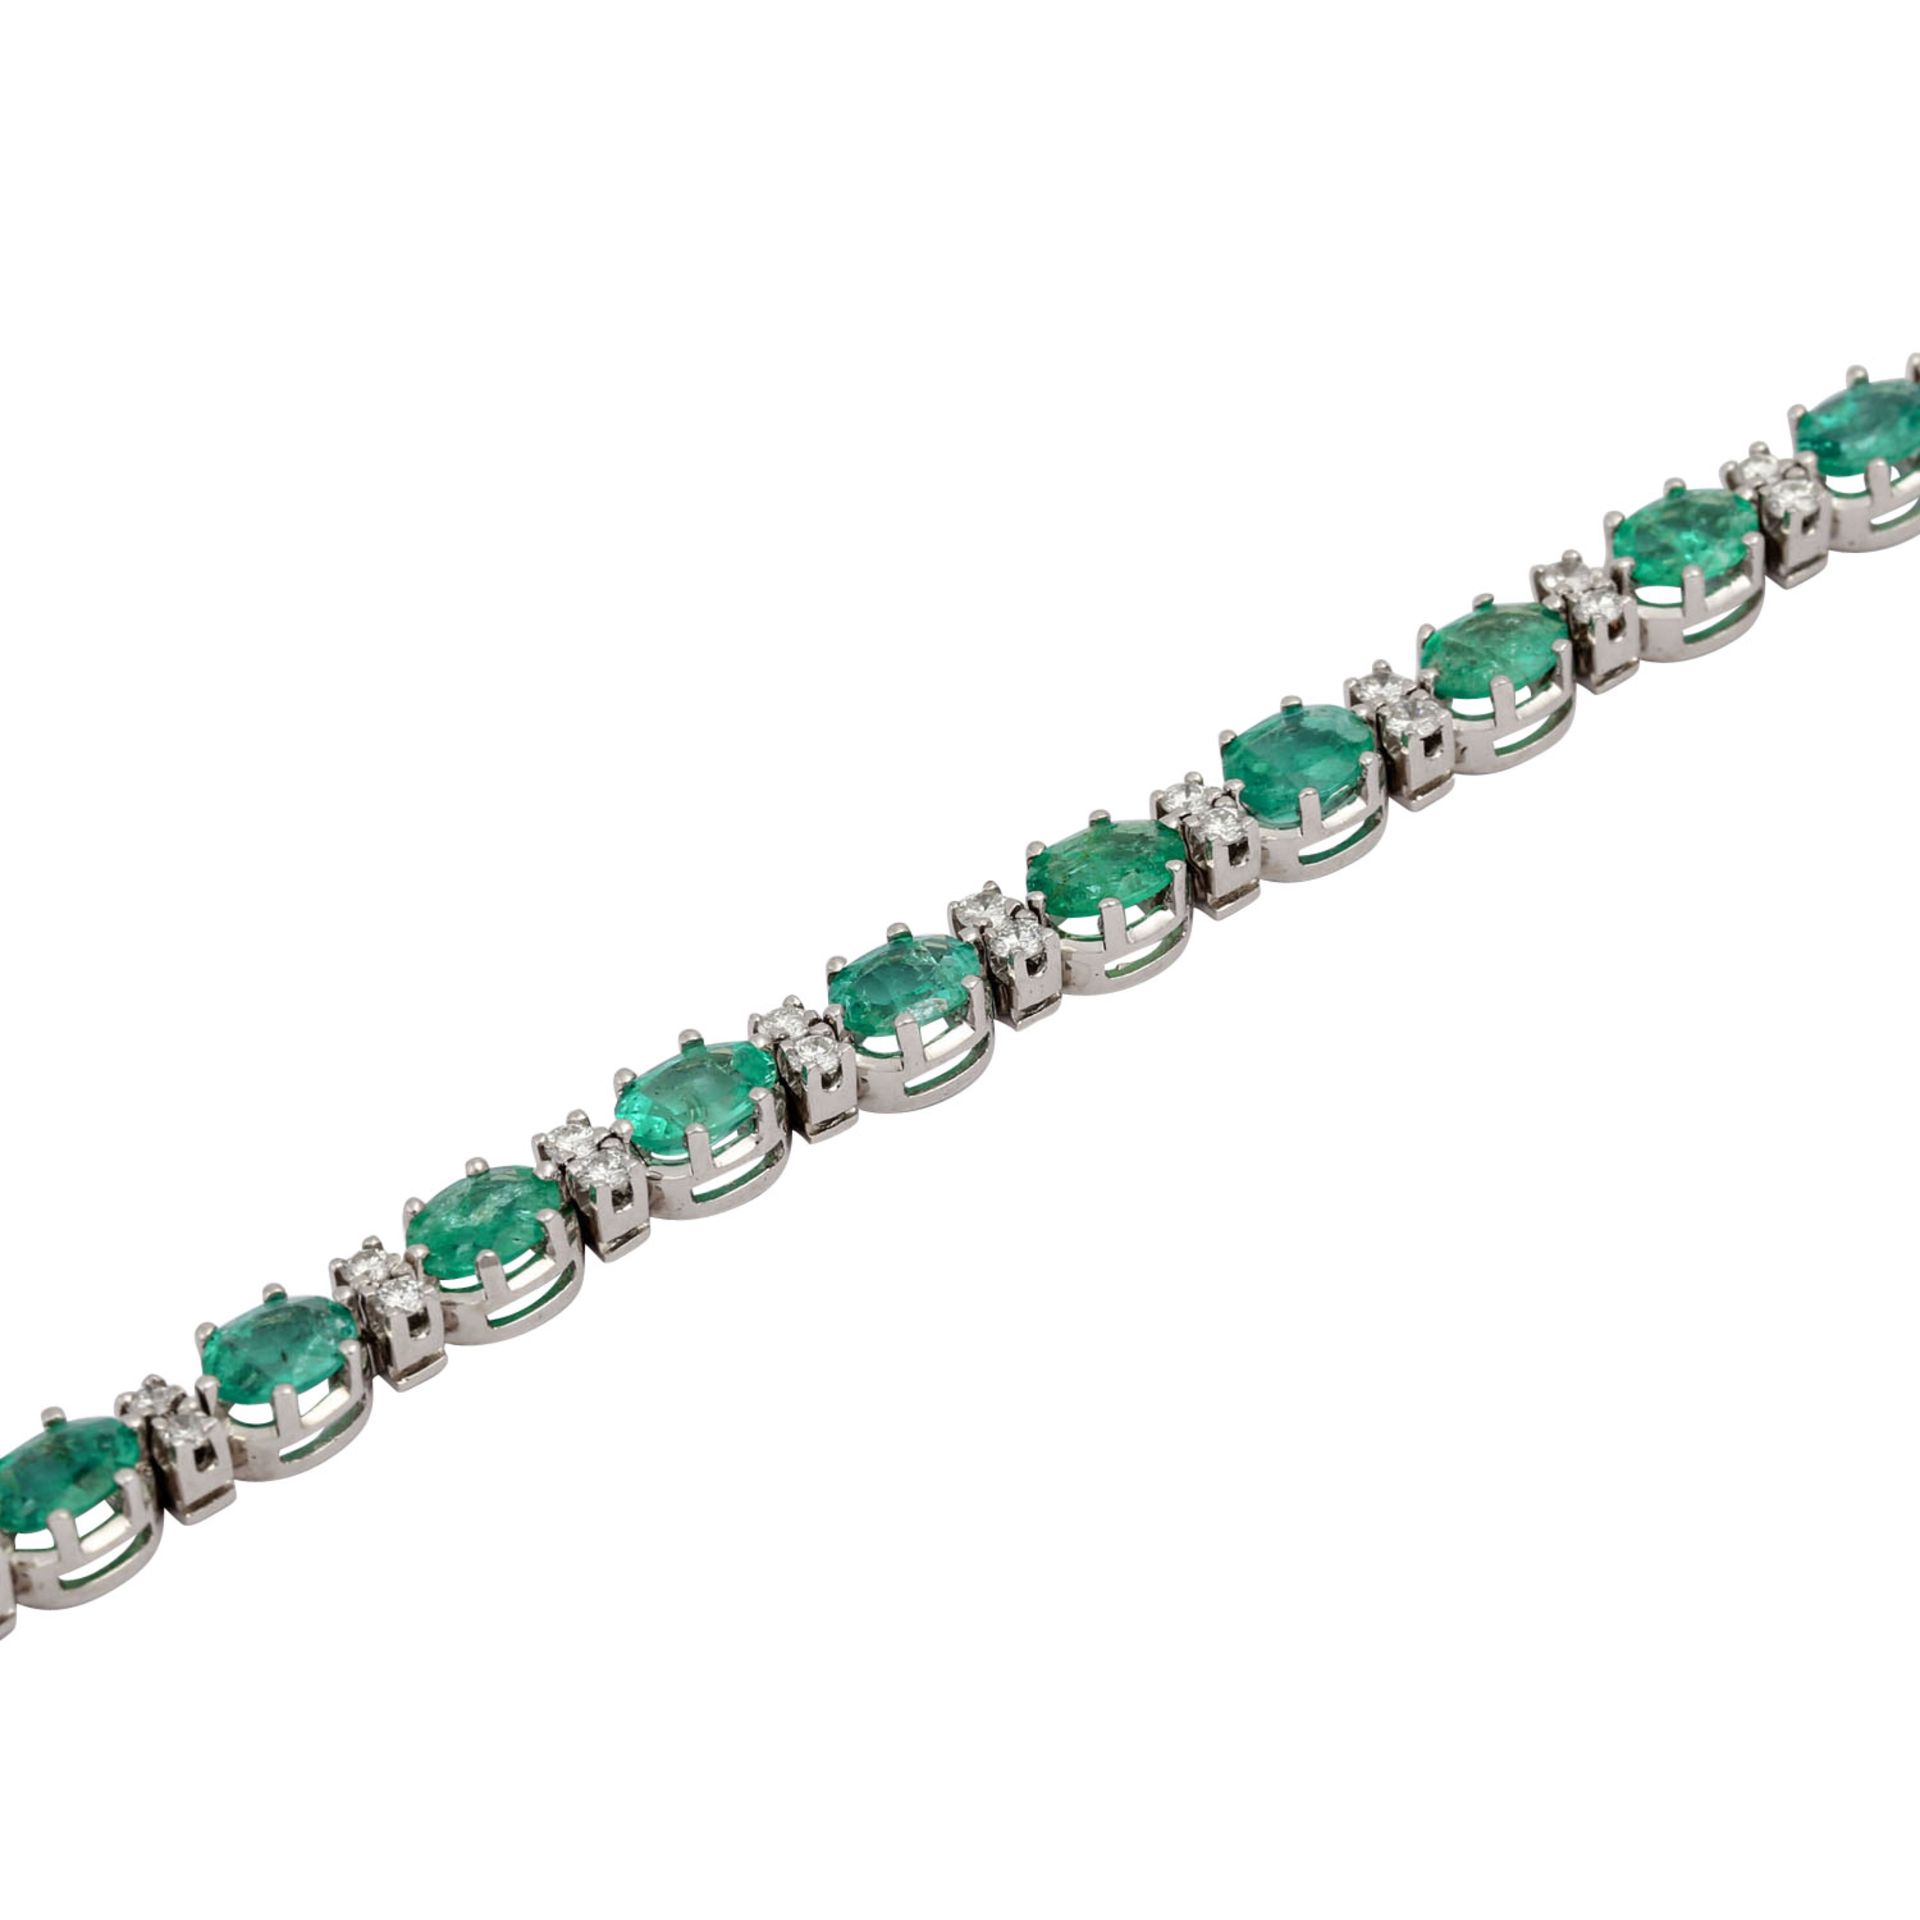 Armband mit Smaragden und Brillanten,zus. ca, 0,76 ct, mittlere Farbe u. Reinheit, Sm - Image 4 of 5